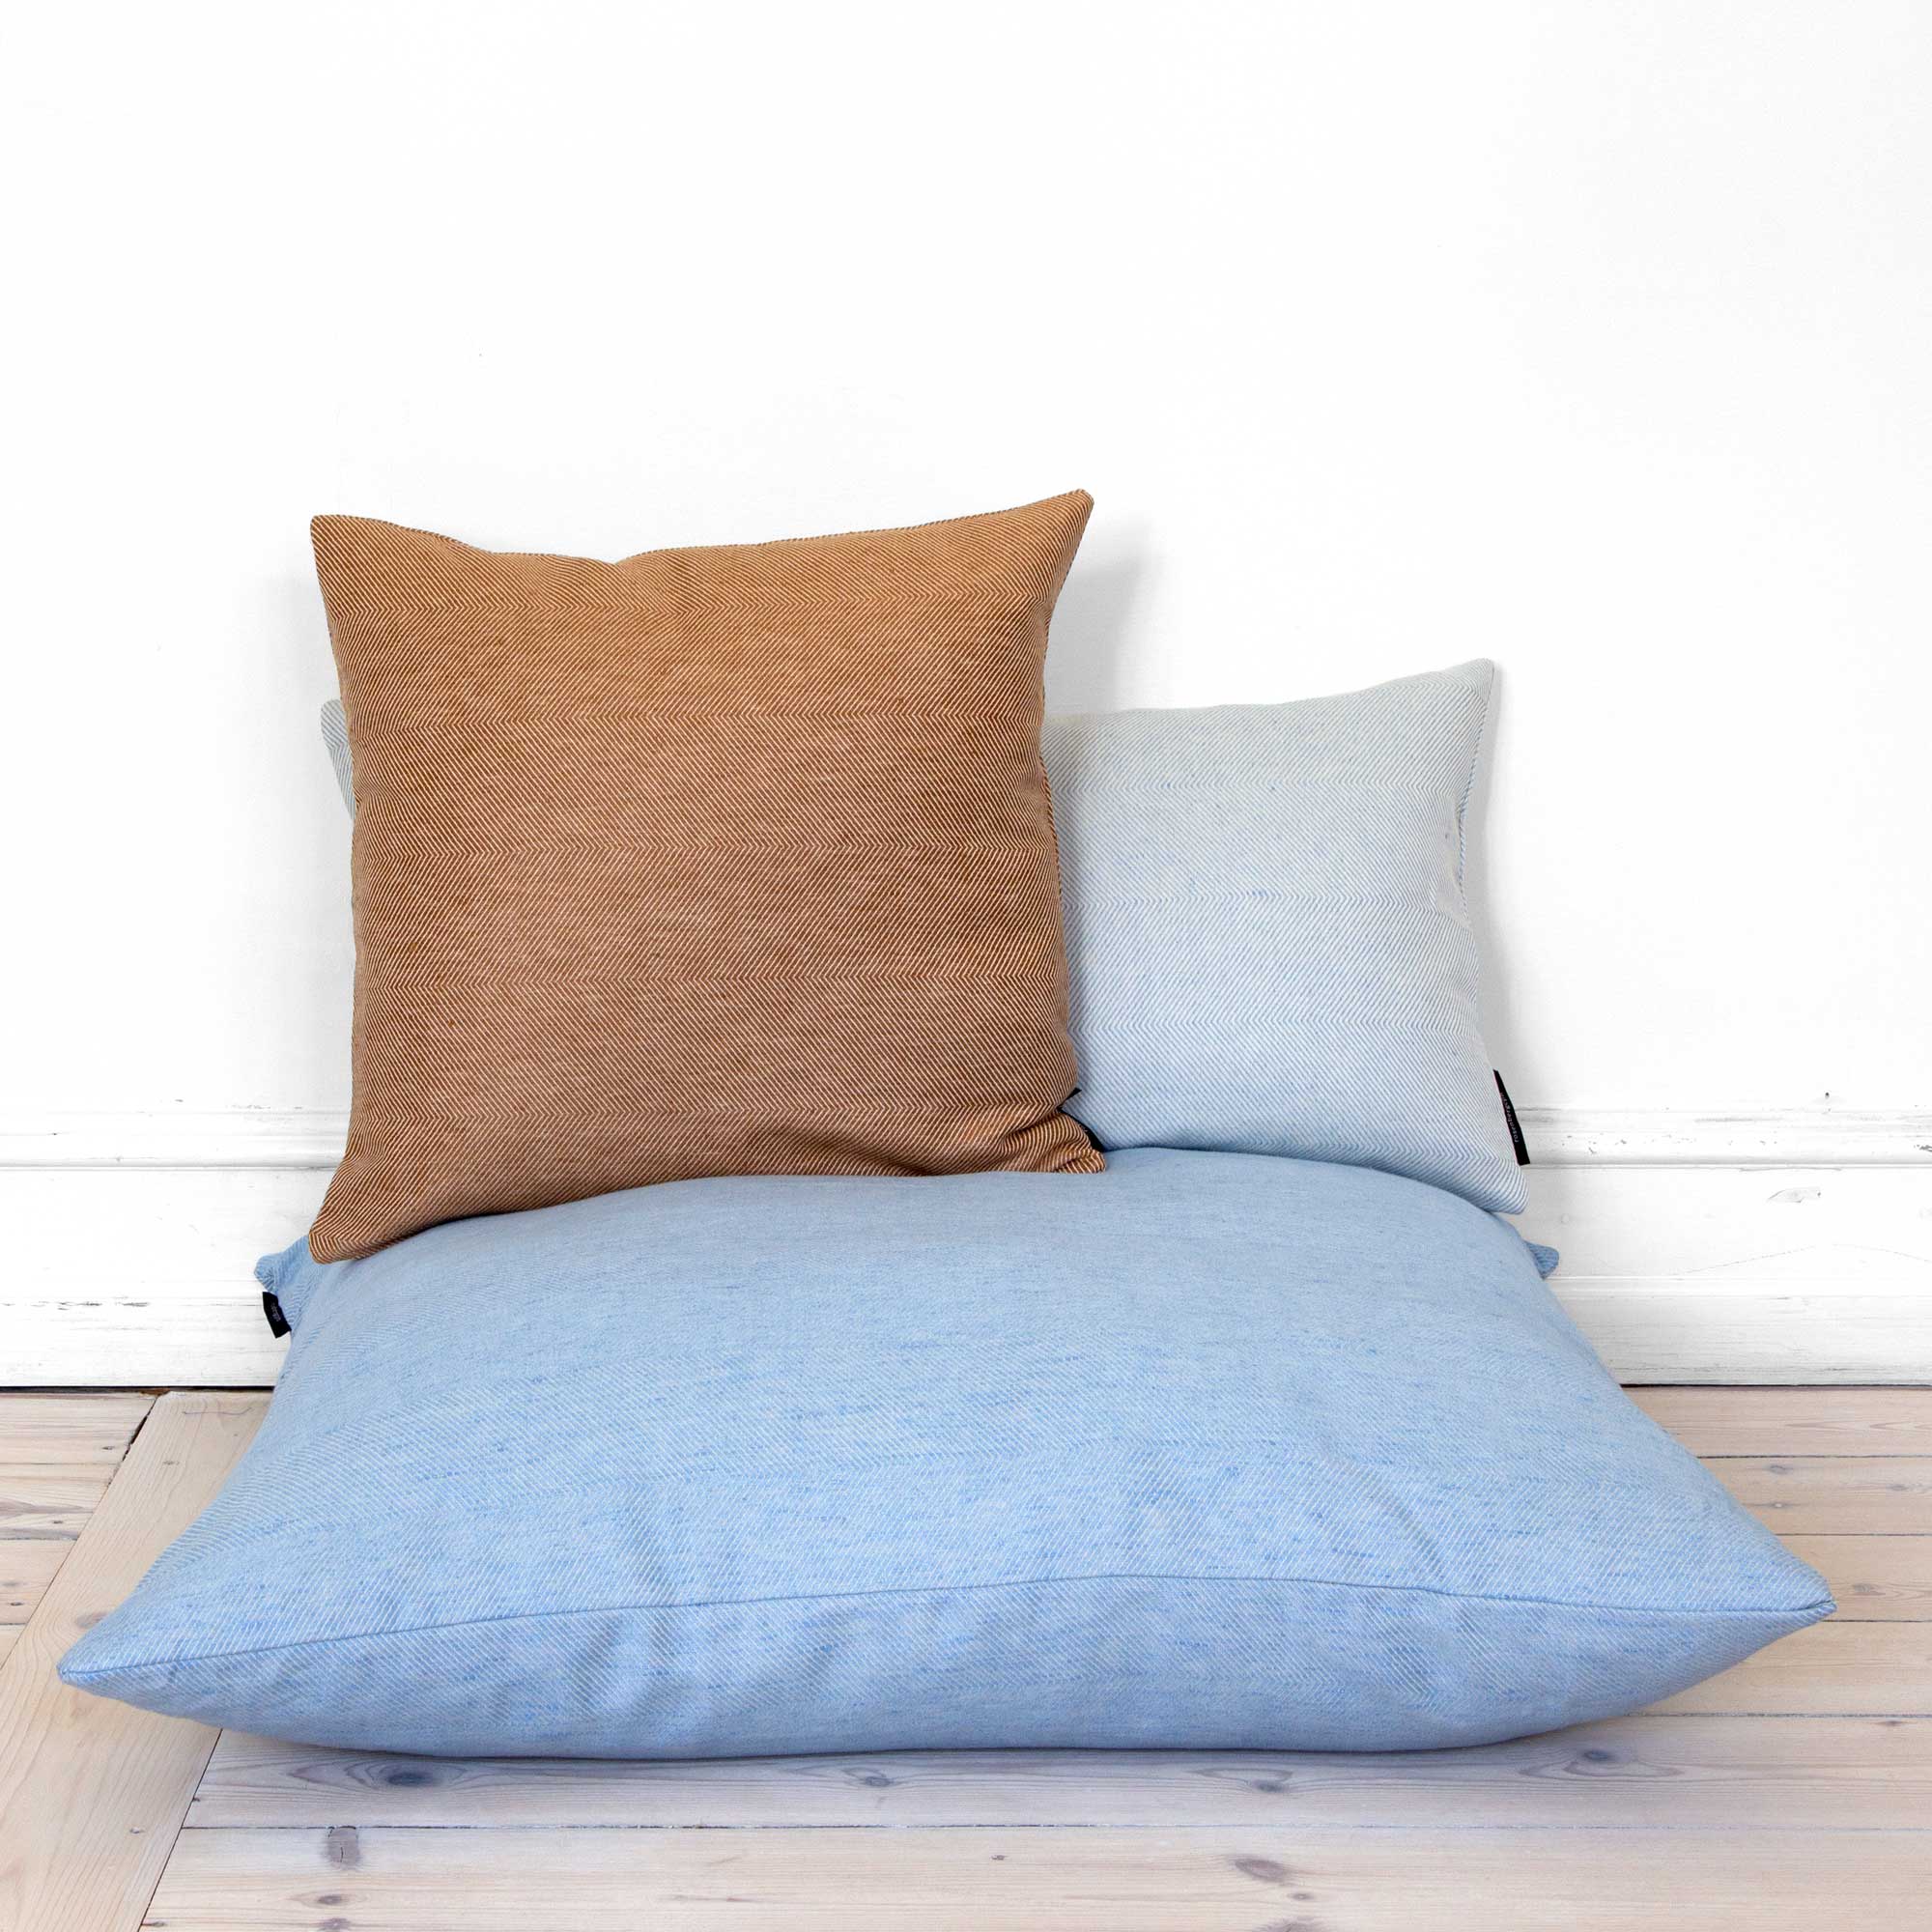 80x80 cm floor cushion linen/cotton Sky Blue, design by Anne Rosenberg, RosenbergCph